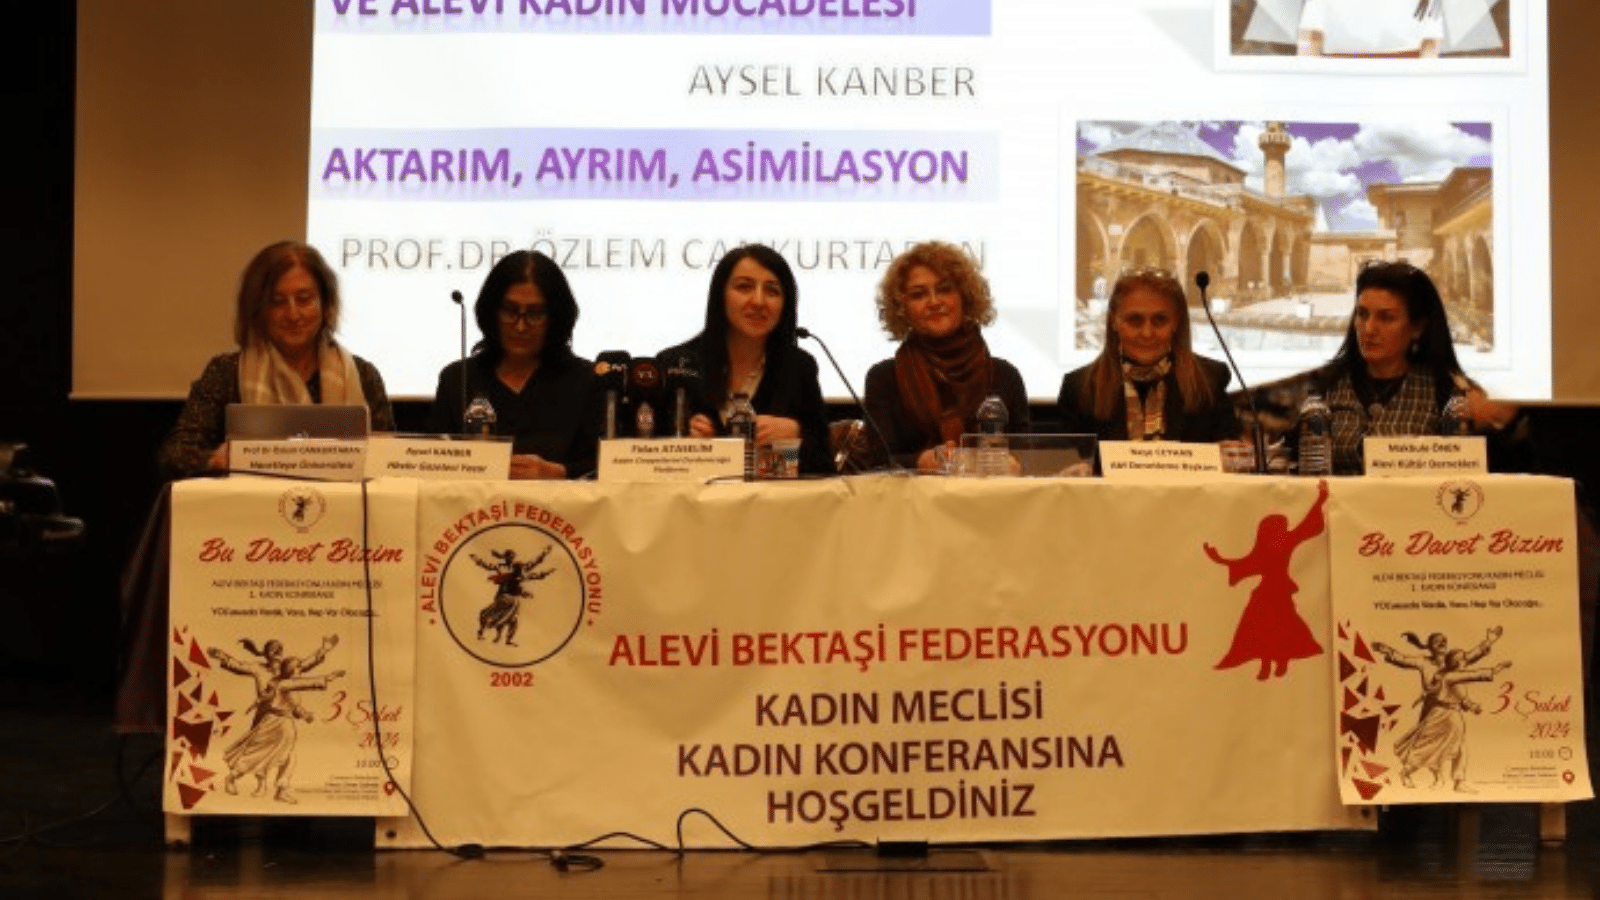 Alevi Bektaşi Federasyonu birinci kadın konferansını gerçekleştirdi